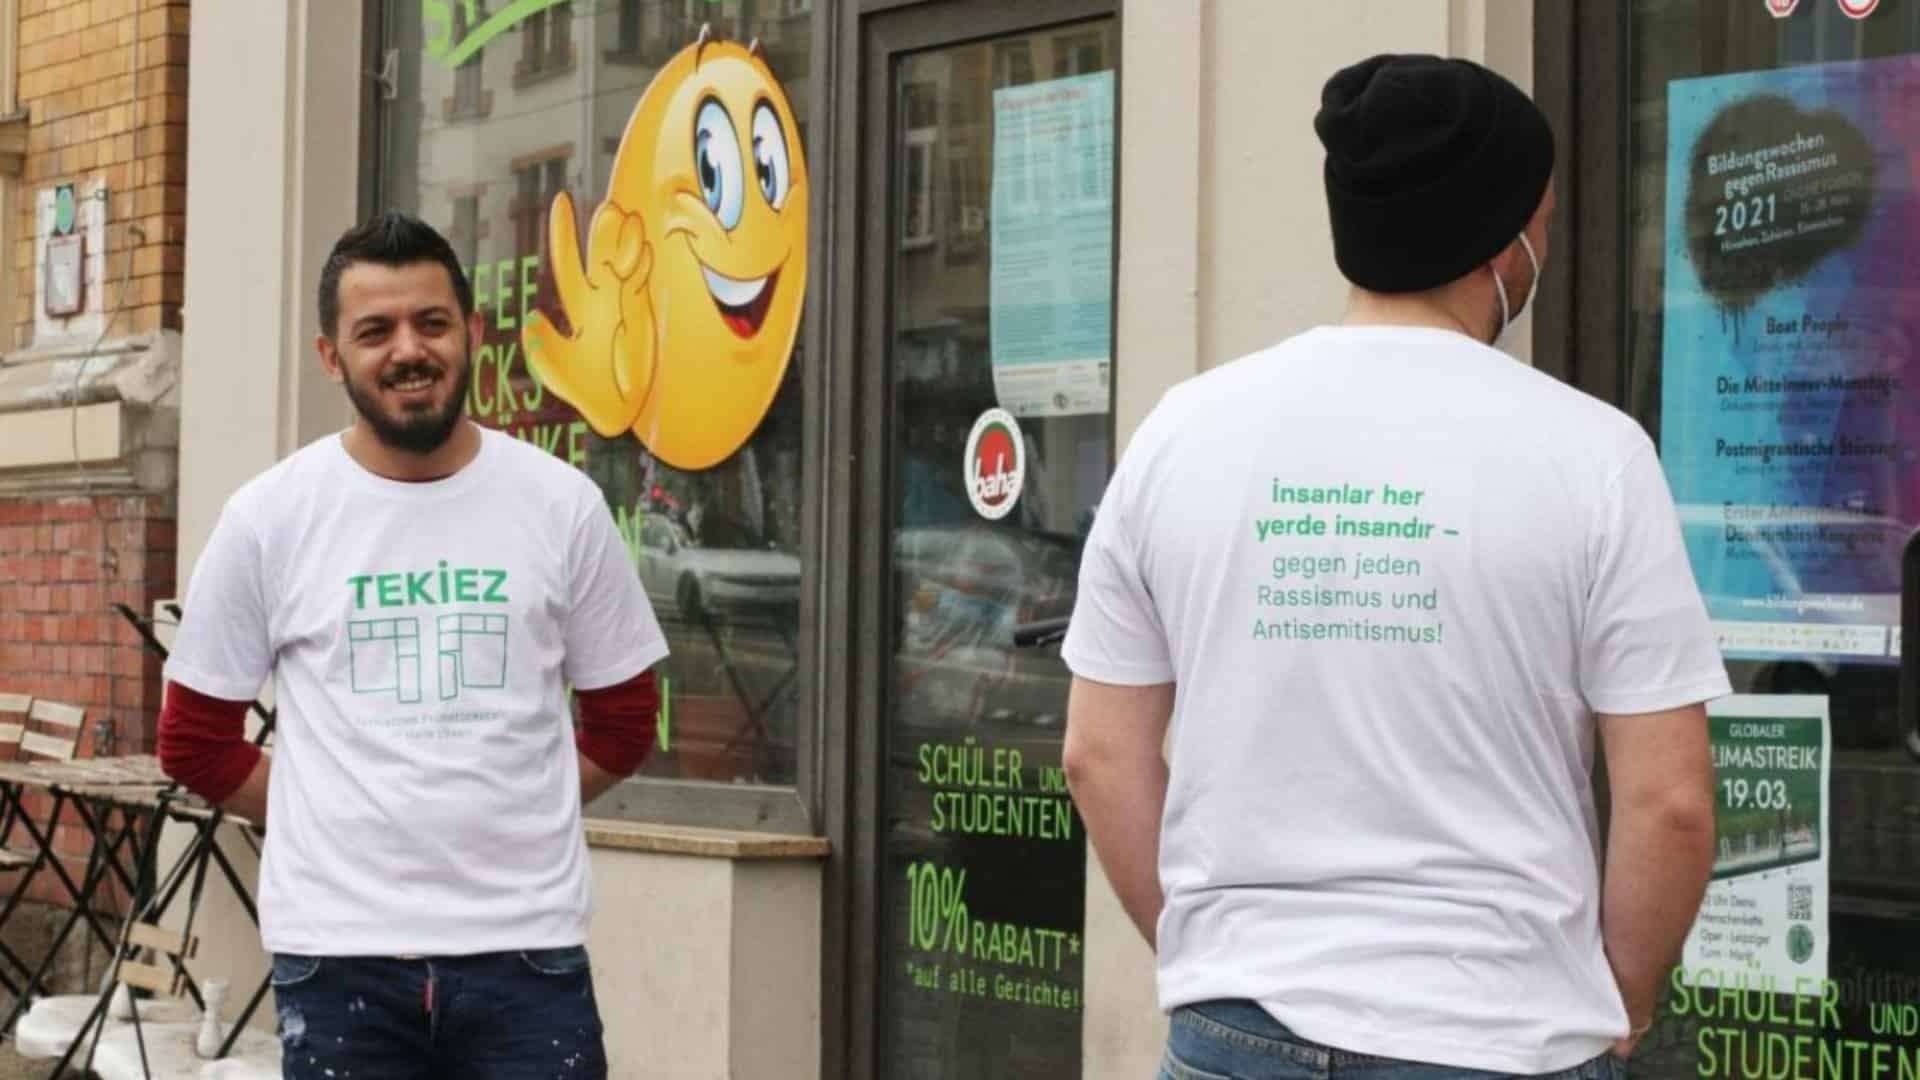 Zwei Personen tragen T-Shirts des tekiez und stehen vor einer Eingangstür